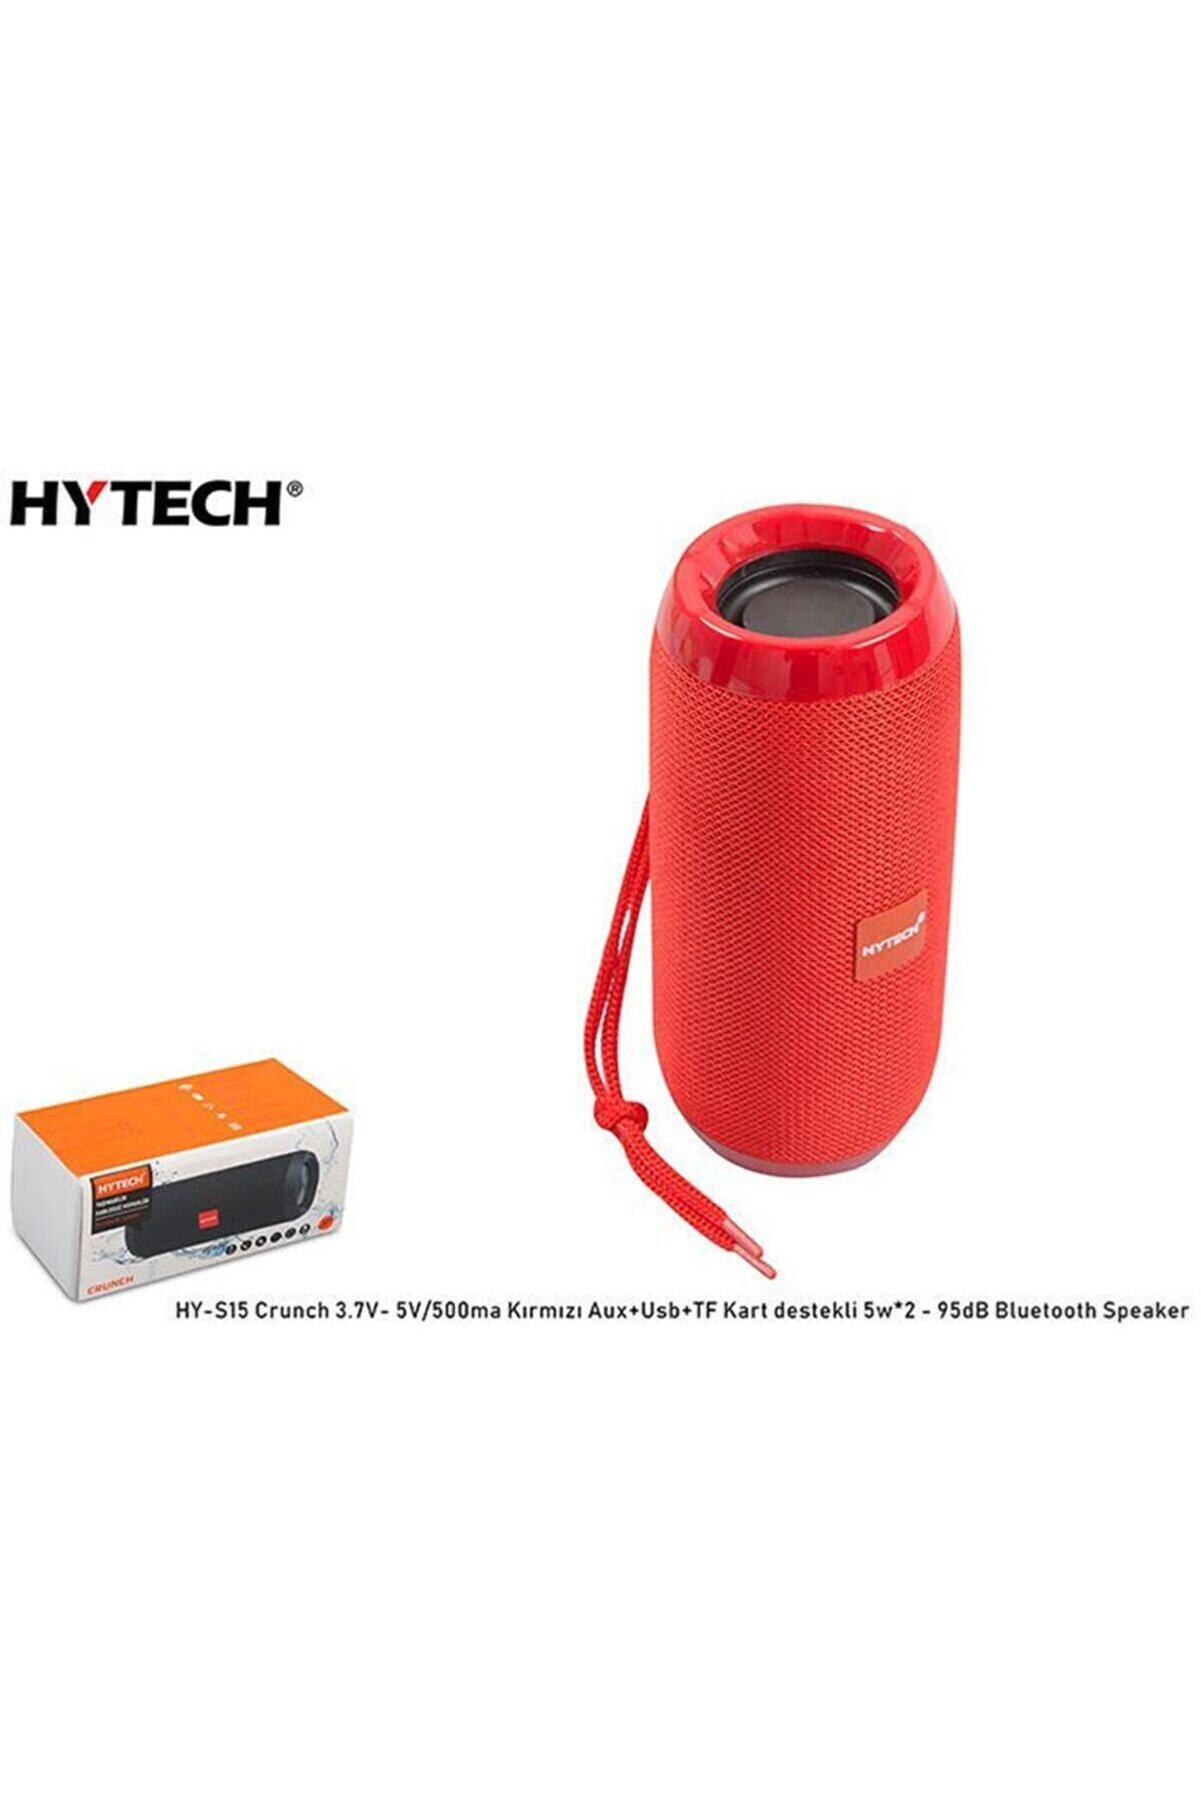 Hytech Portable Stereo Bt Speakers